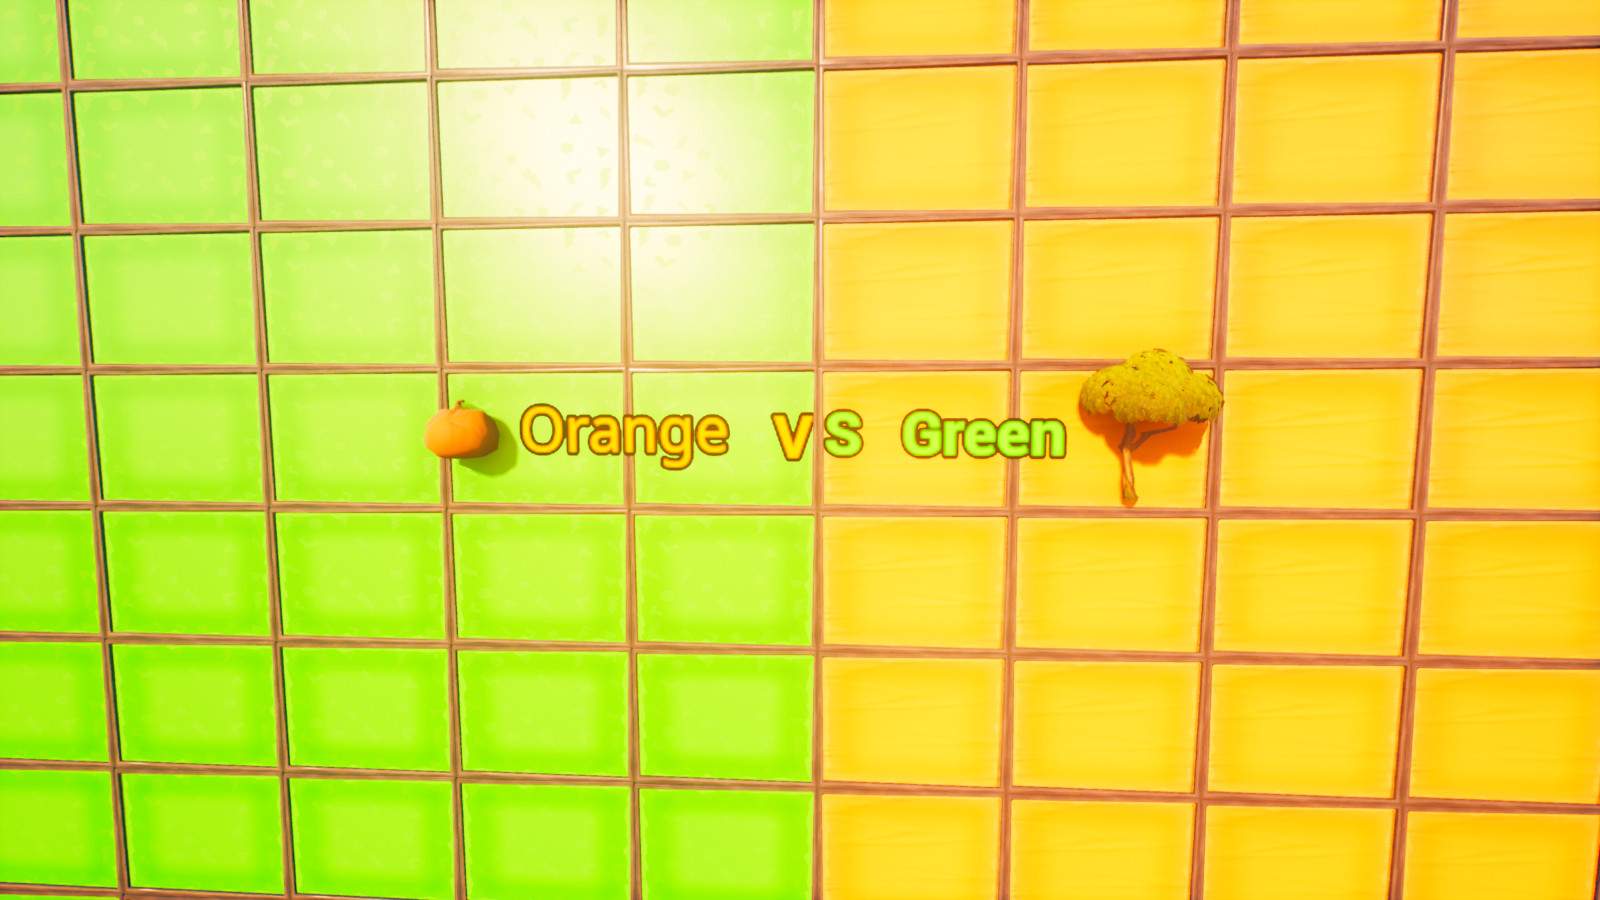 8V8 ORANGE VS GREEN RUMBLE!